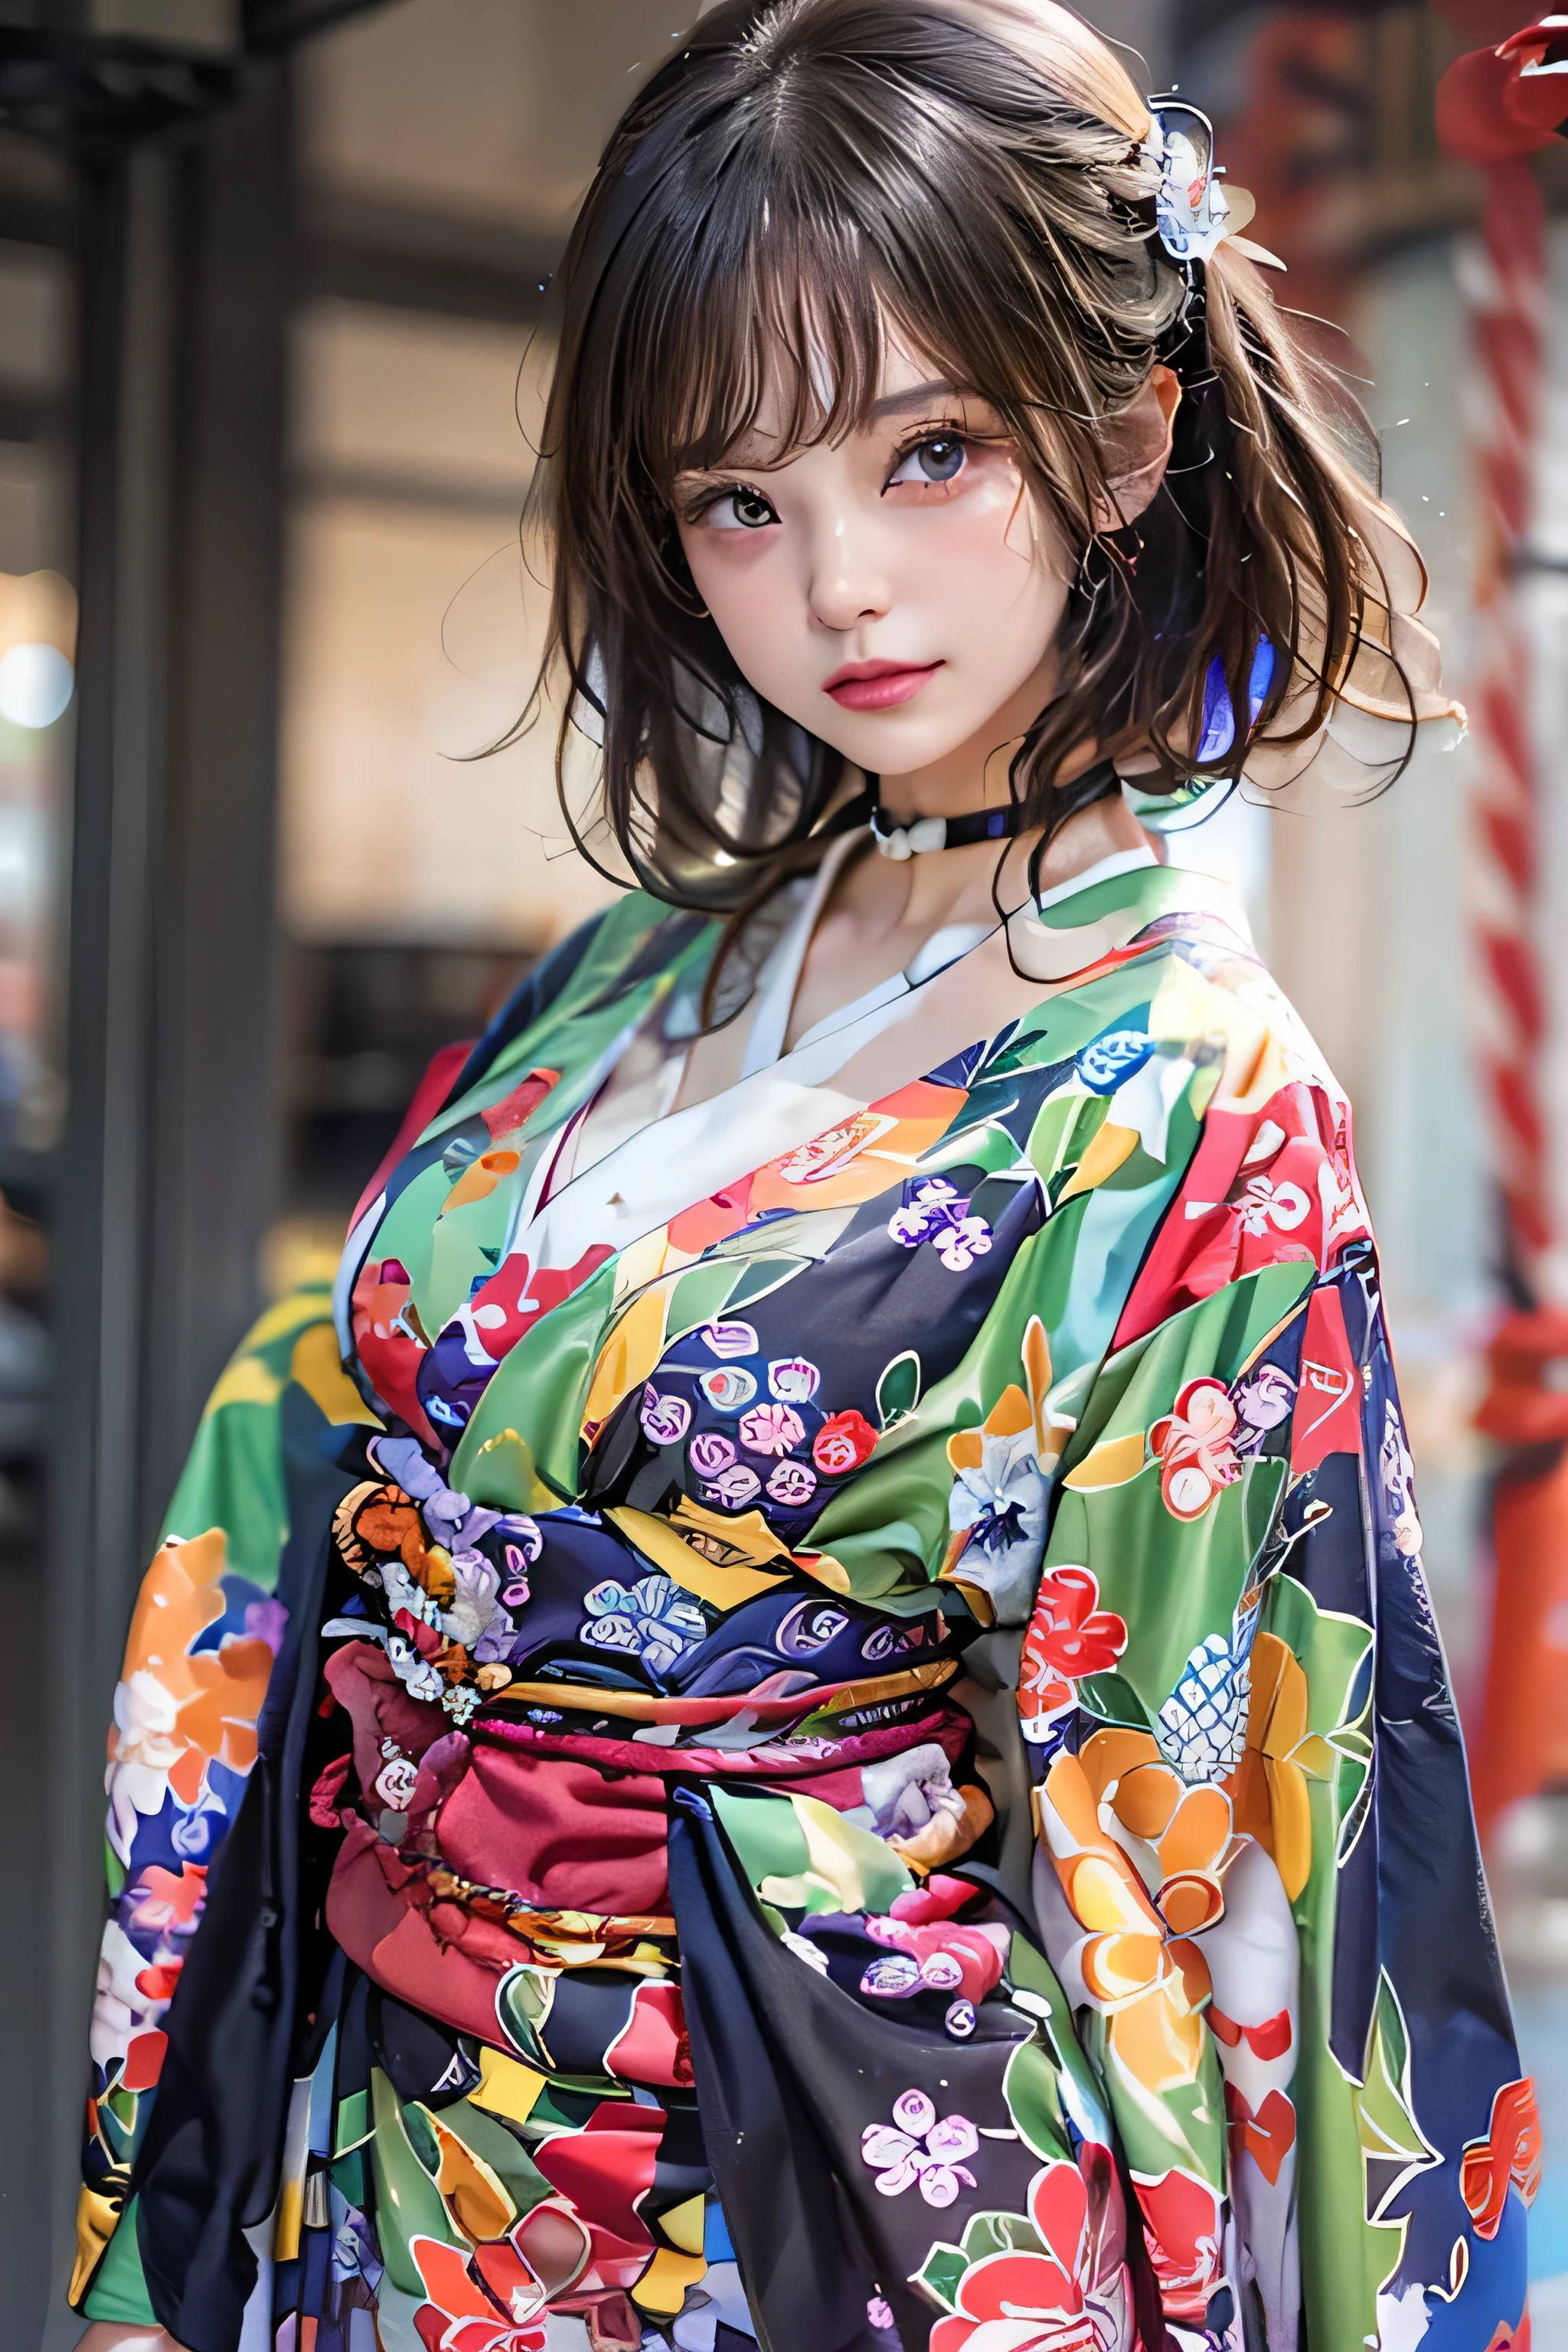 (qualité supérieure,Qualité d&#39;image 8K,chef d&#39;oeuvre:1.3,haute résolution,dessus de la table:1.2), vue de face:0.8, regarder le spectateur, femme de 23 ans, En regardant la caméra,(robe japonaise, kimono:1.4,commun:1.2,avec motif floral, un tour de cou:1.4),(Cheveux courts:1.2,Un brun,de beaux cheveux), (Ruelle:1.3), kimono comes off,cuisse visible,je peux voir des culottes,beau visage,cinématique,(Jeunes idoles de l&#39;héliogravure, Jeune idole maigre de gravure, idole de gravure sophistiquée),(visage impeccable et détaillé),Mains normales,Doigt normal,jambes normales